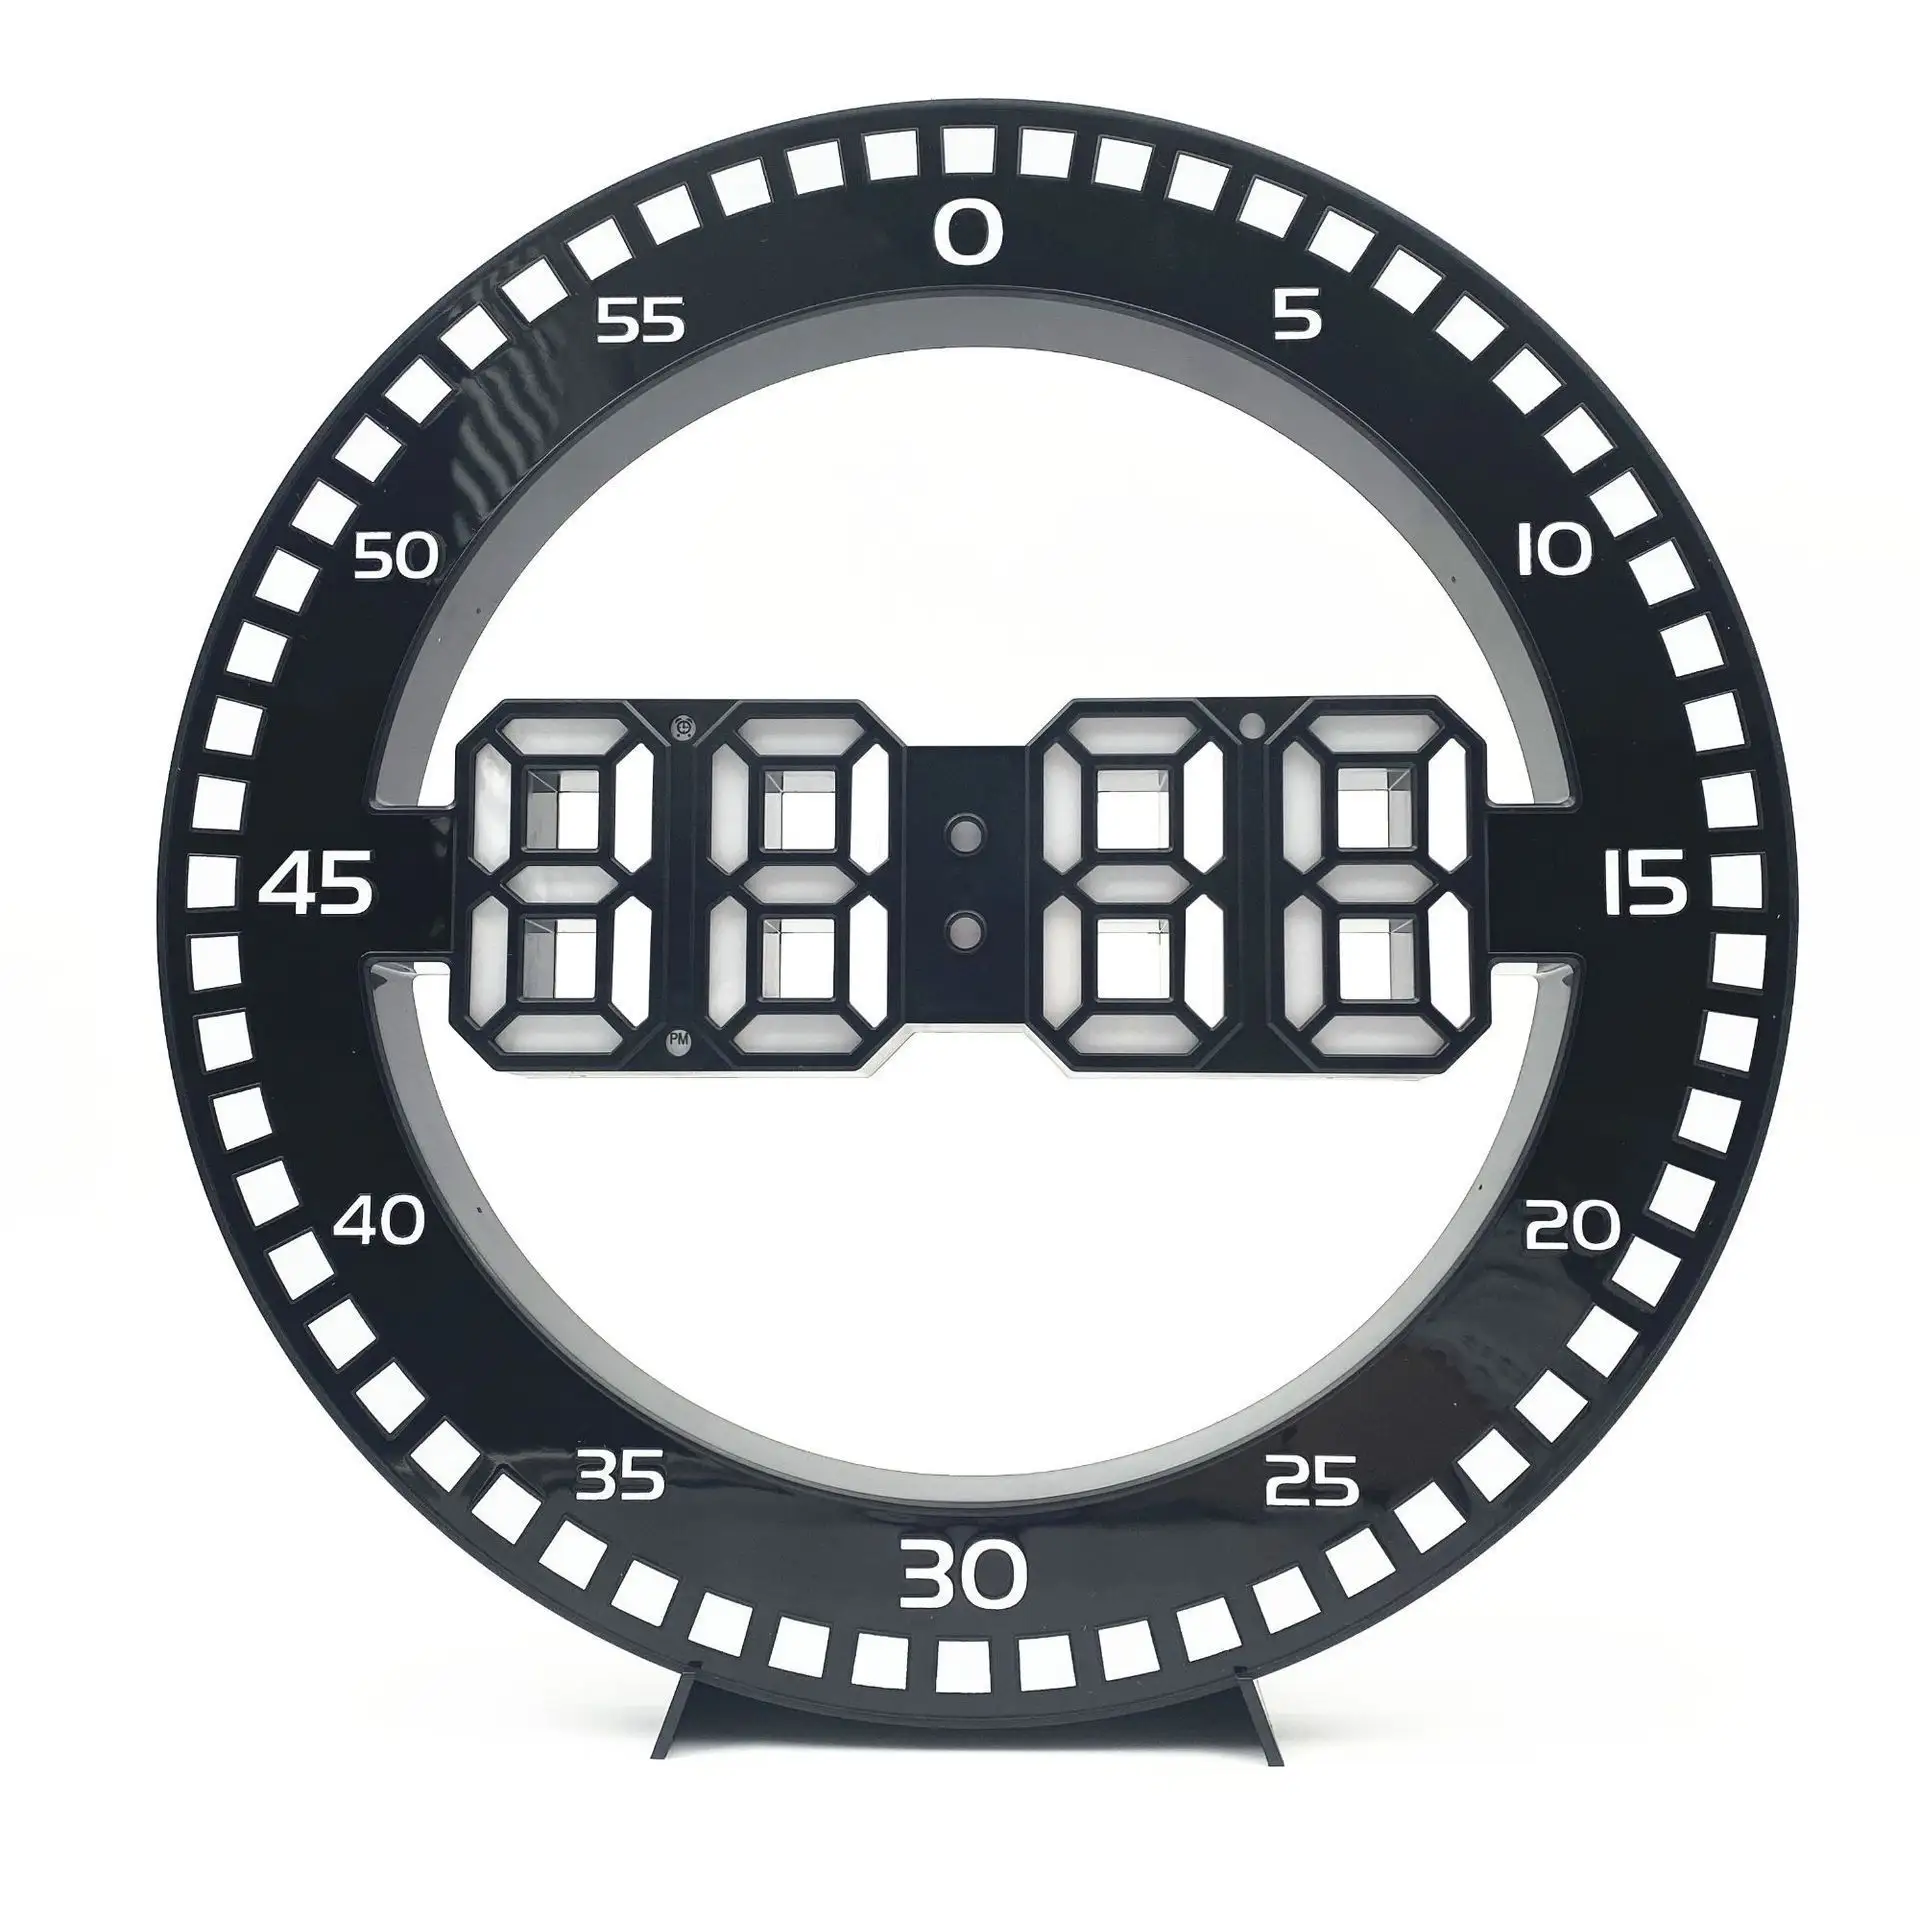 Reloj de mesa Digital 3d Led, alarma de segunda pared con Control de brillo de temperatura, decoración moderna